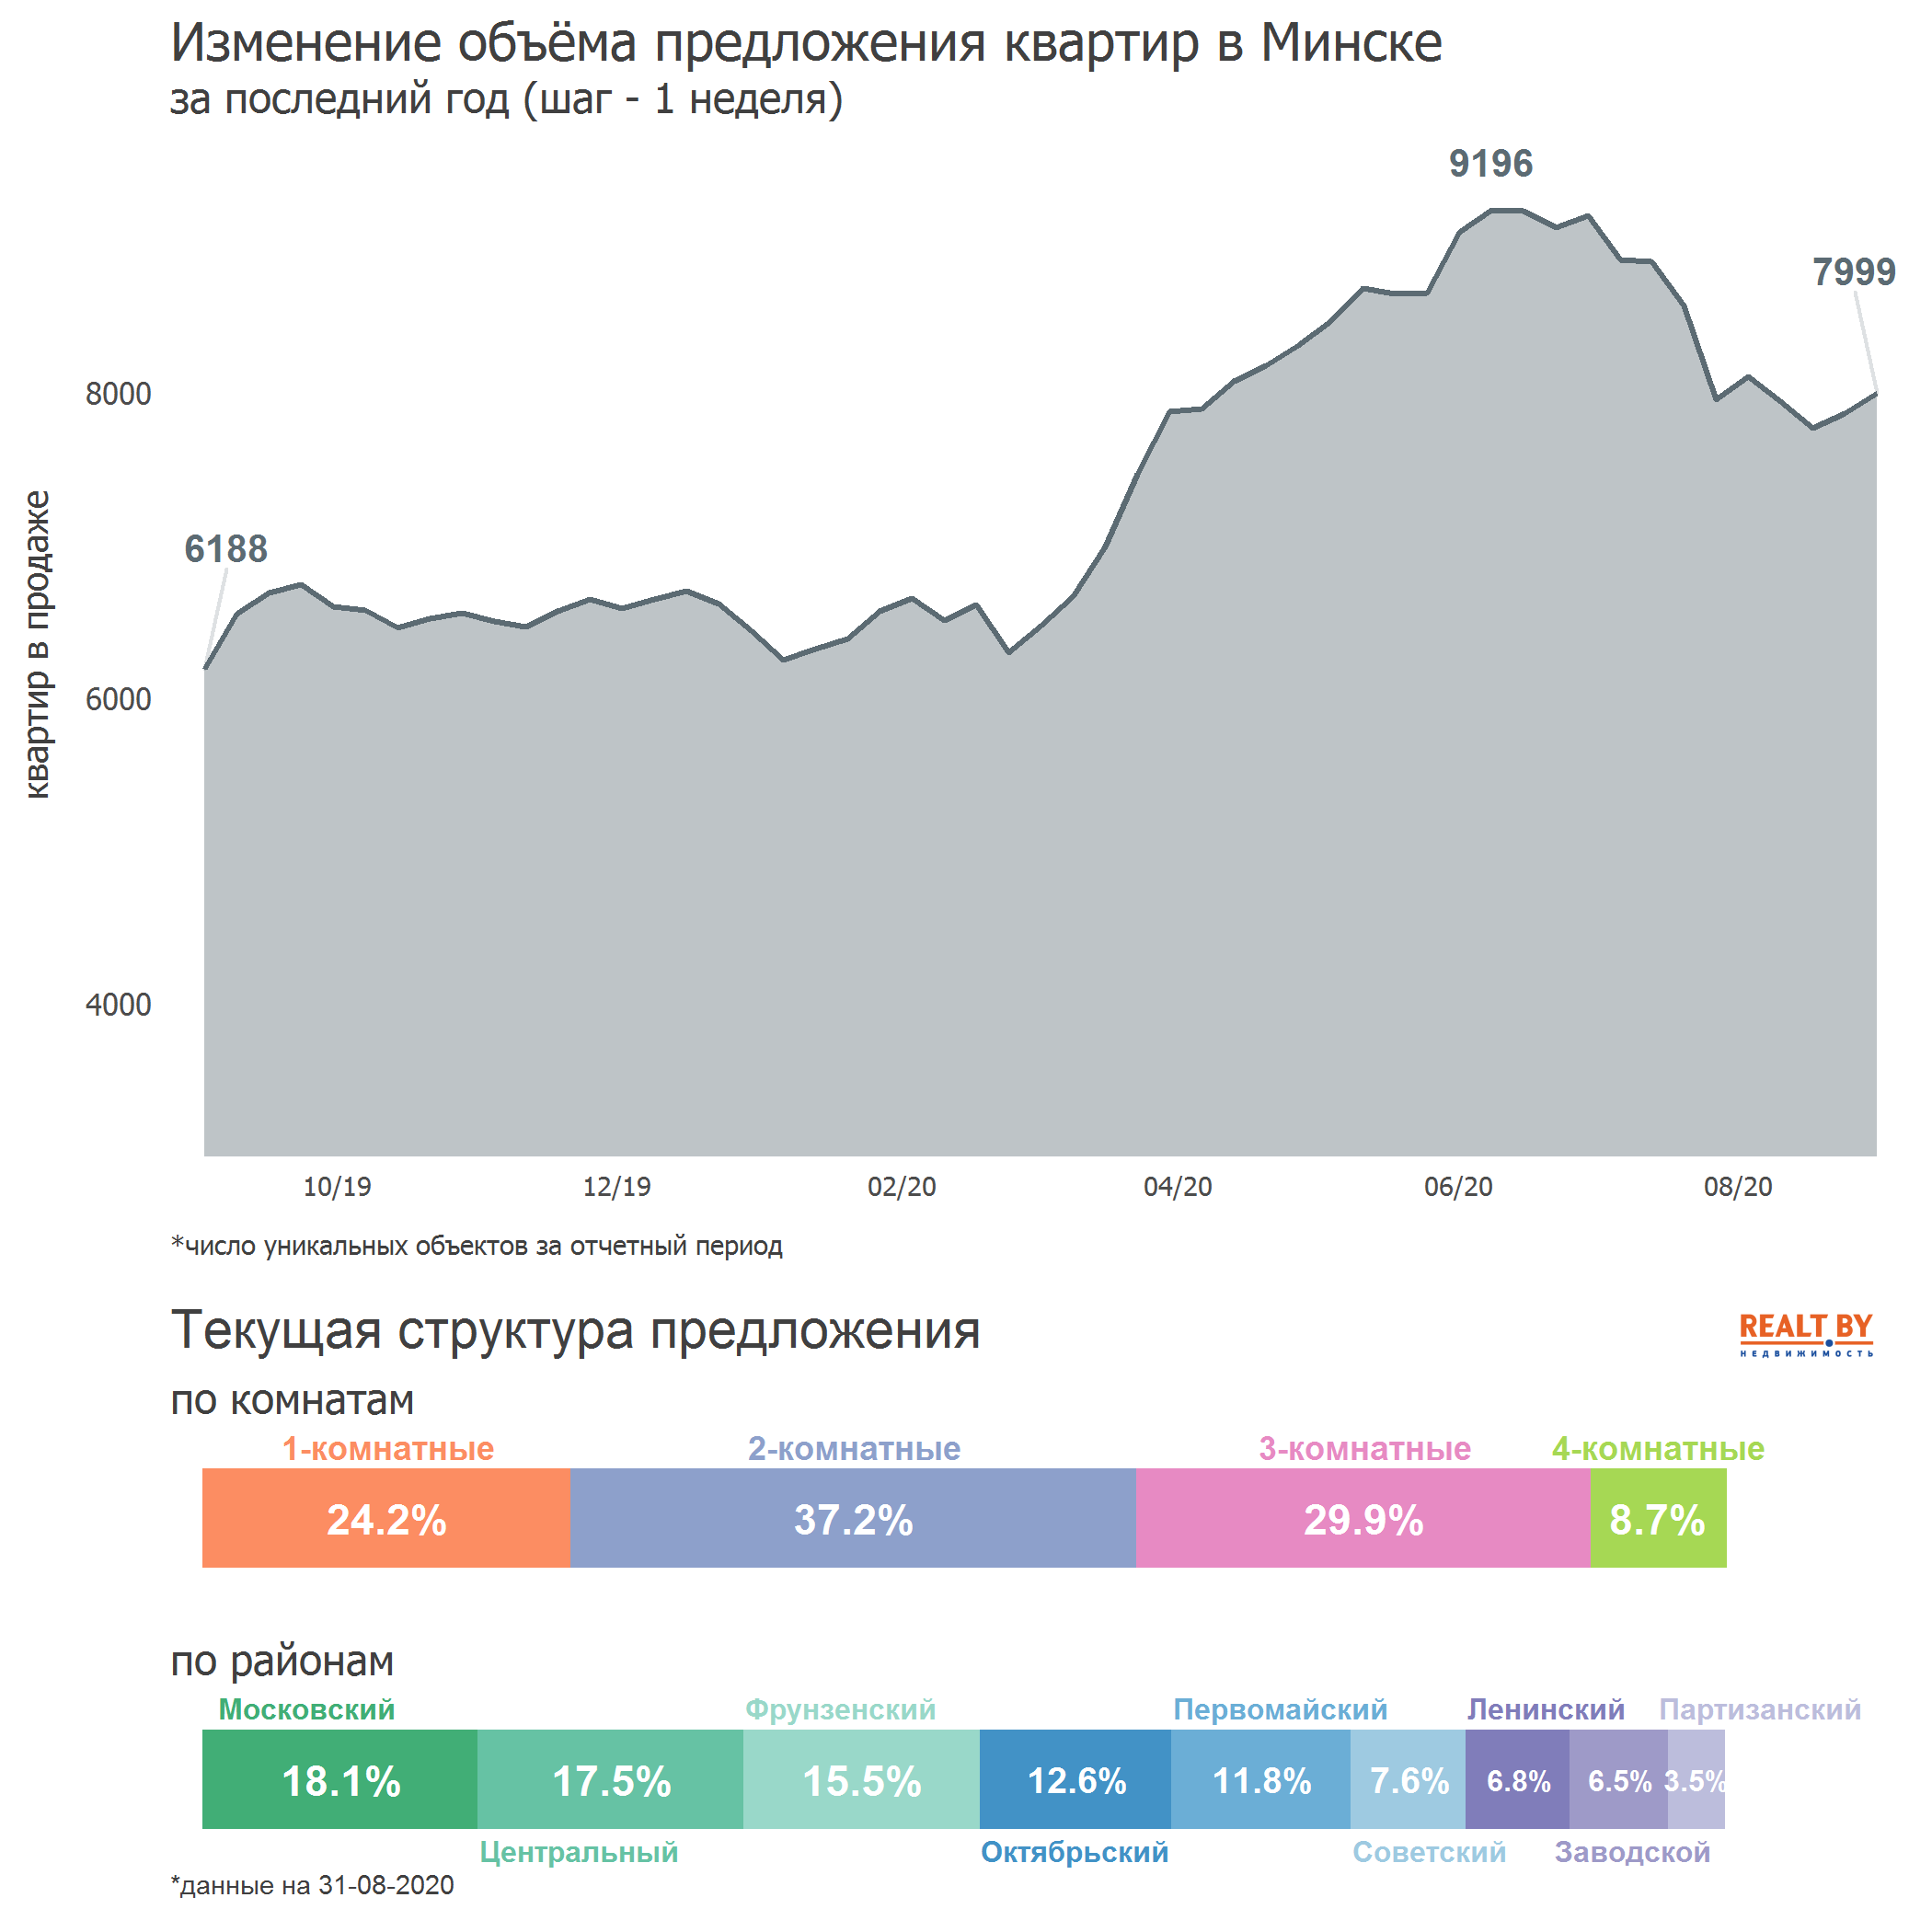 Мониторинг цен предложения квартир в Минске за 24-31 августа 2020 года